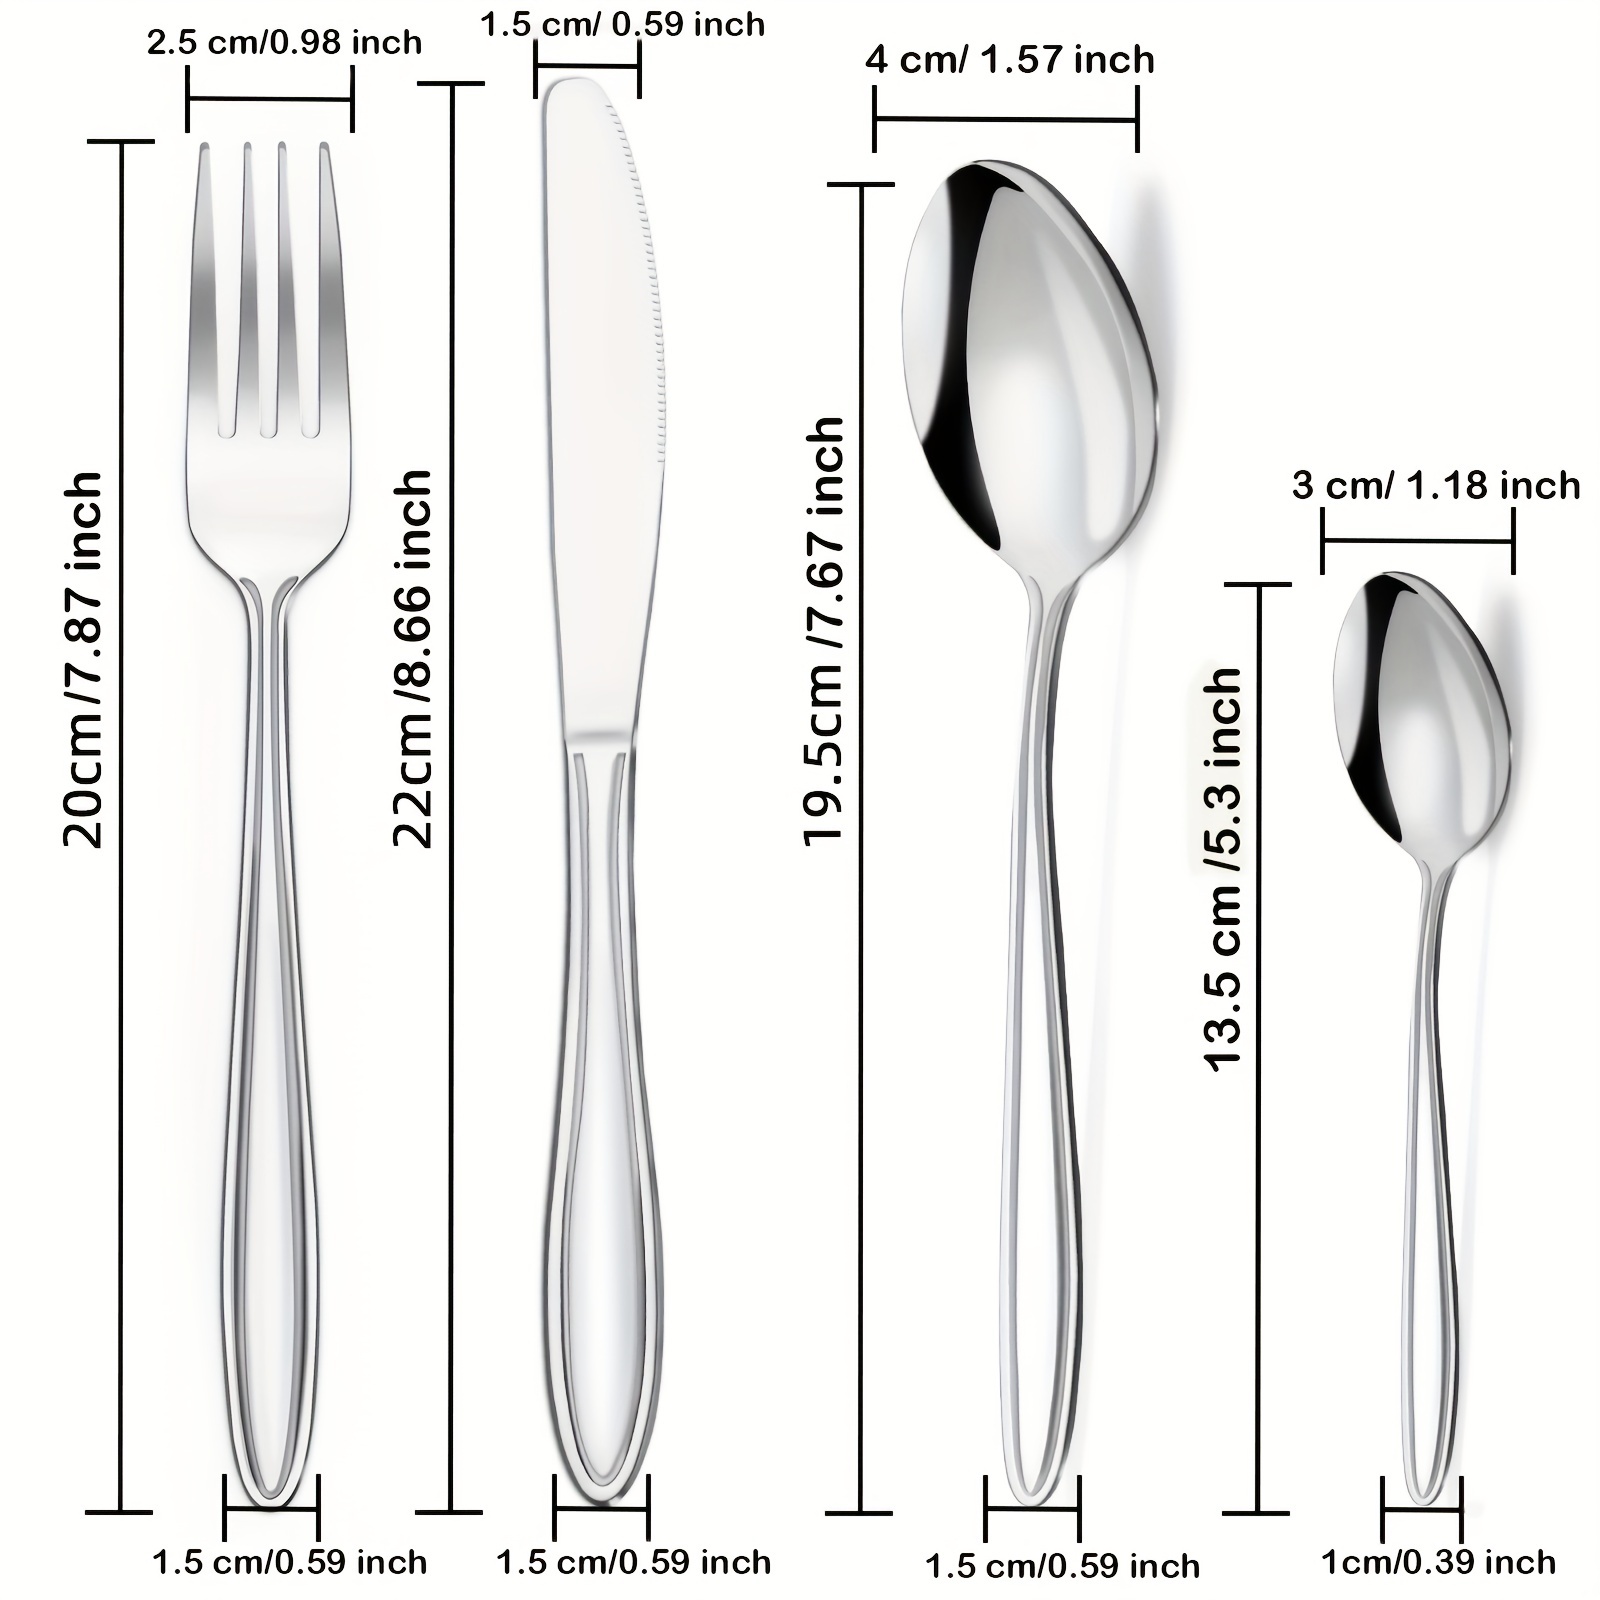 Apeo Stainless Steel Silverware Set, Metal Cutlery Flatware Set